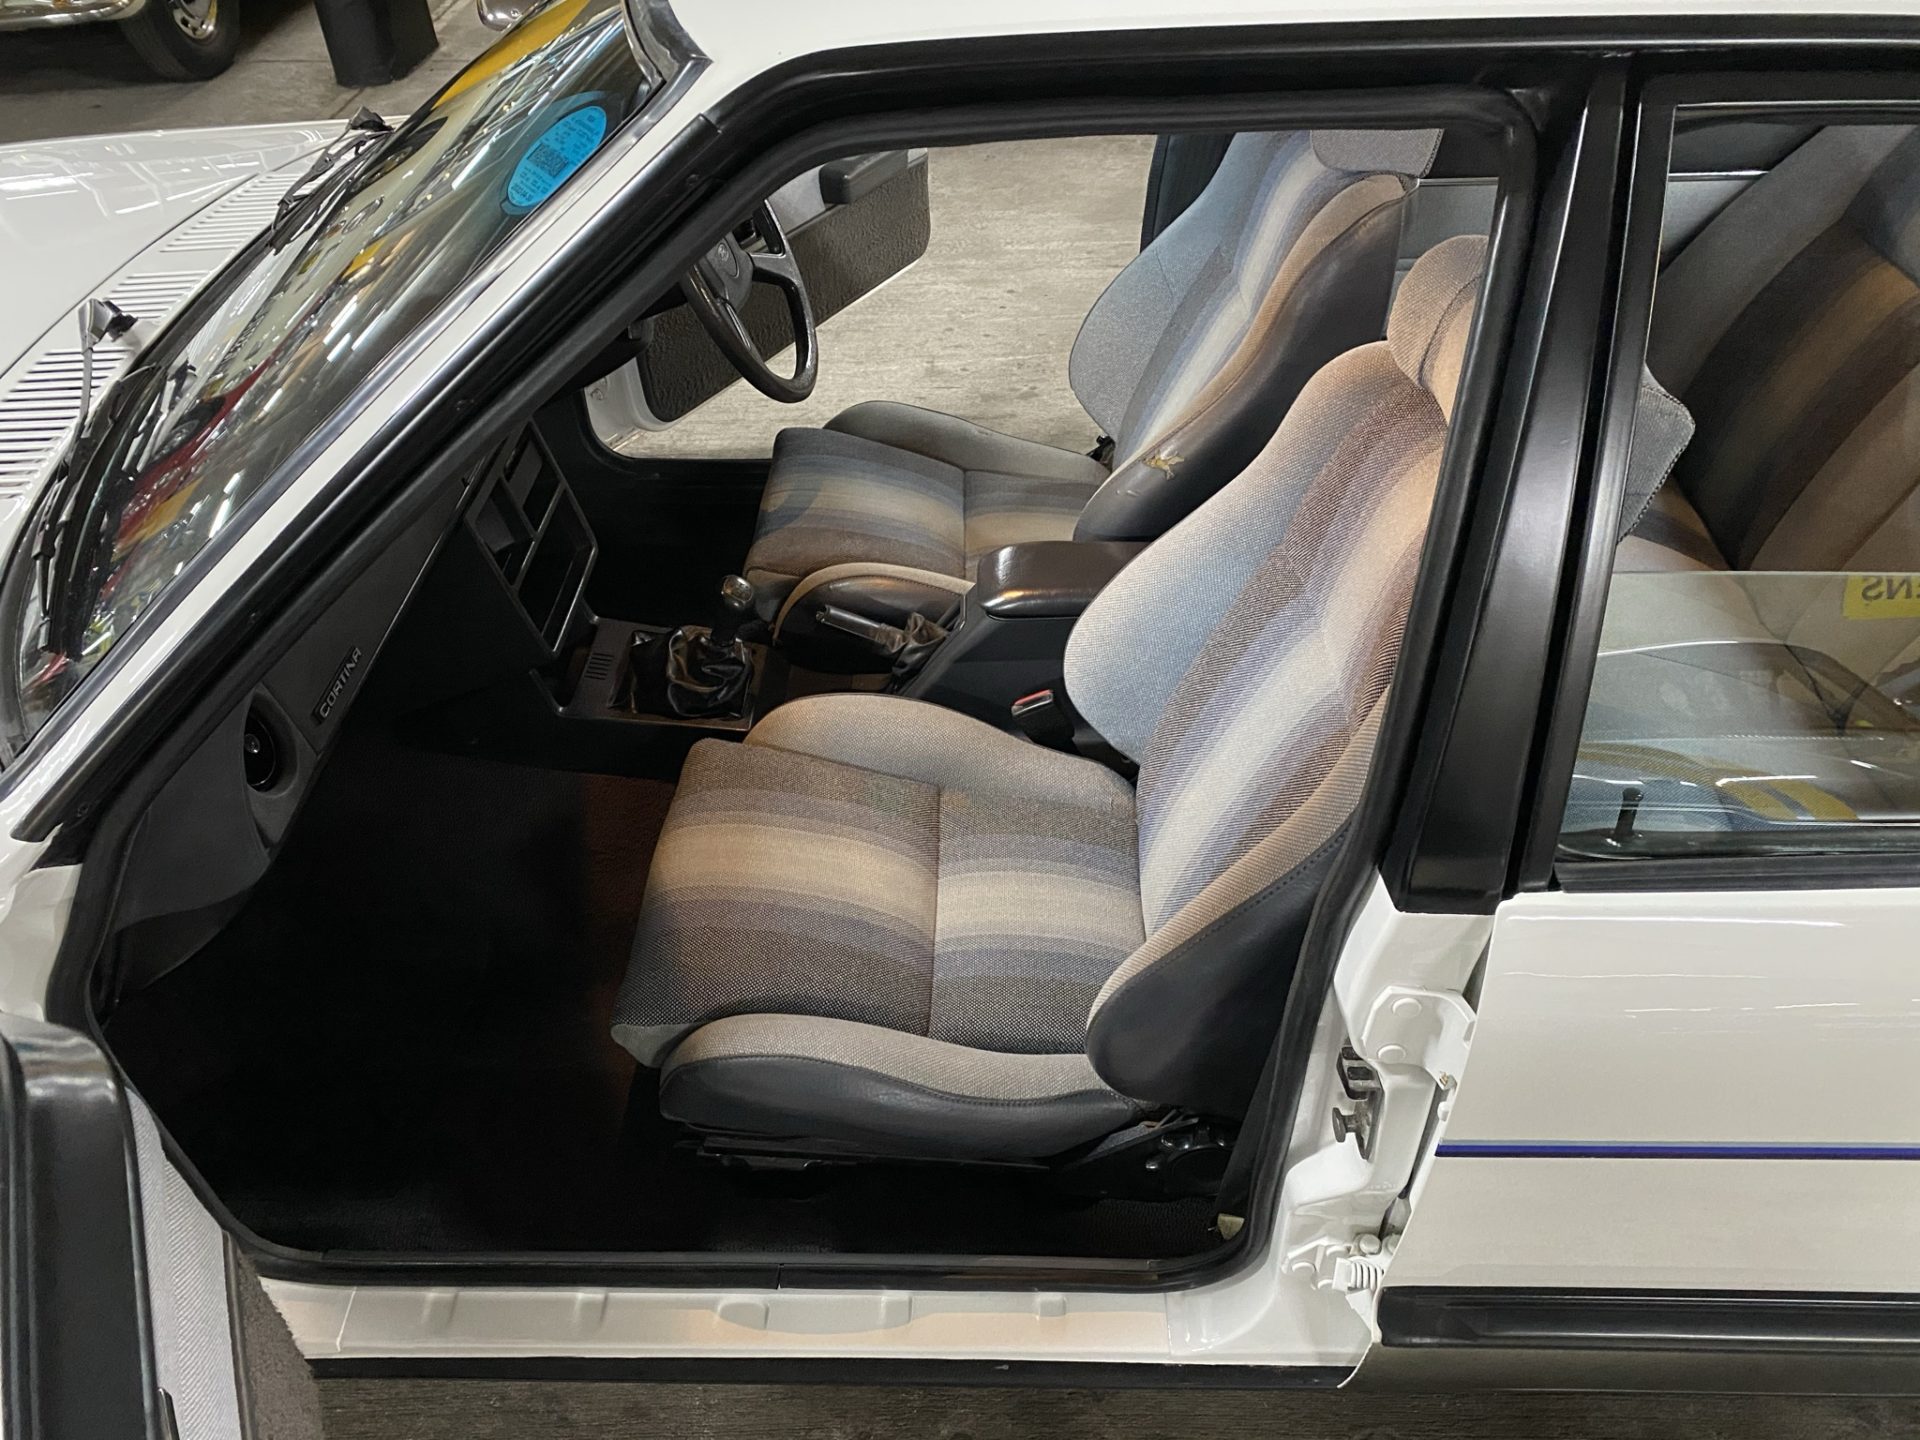 1983 Ford Cortina TF XR6